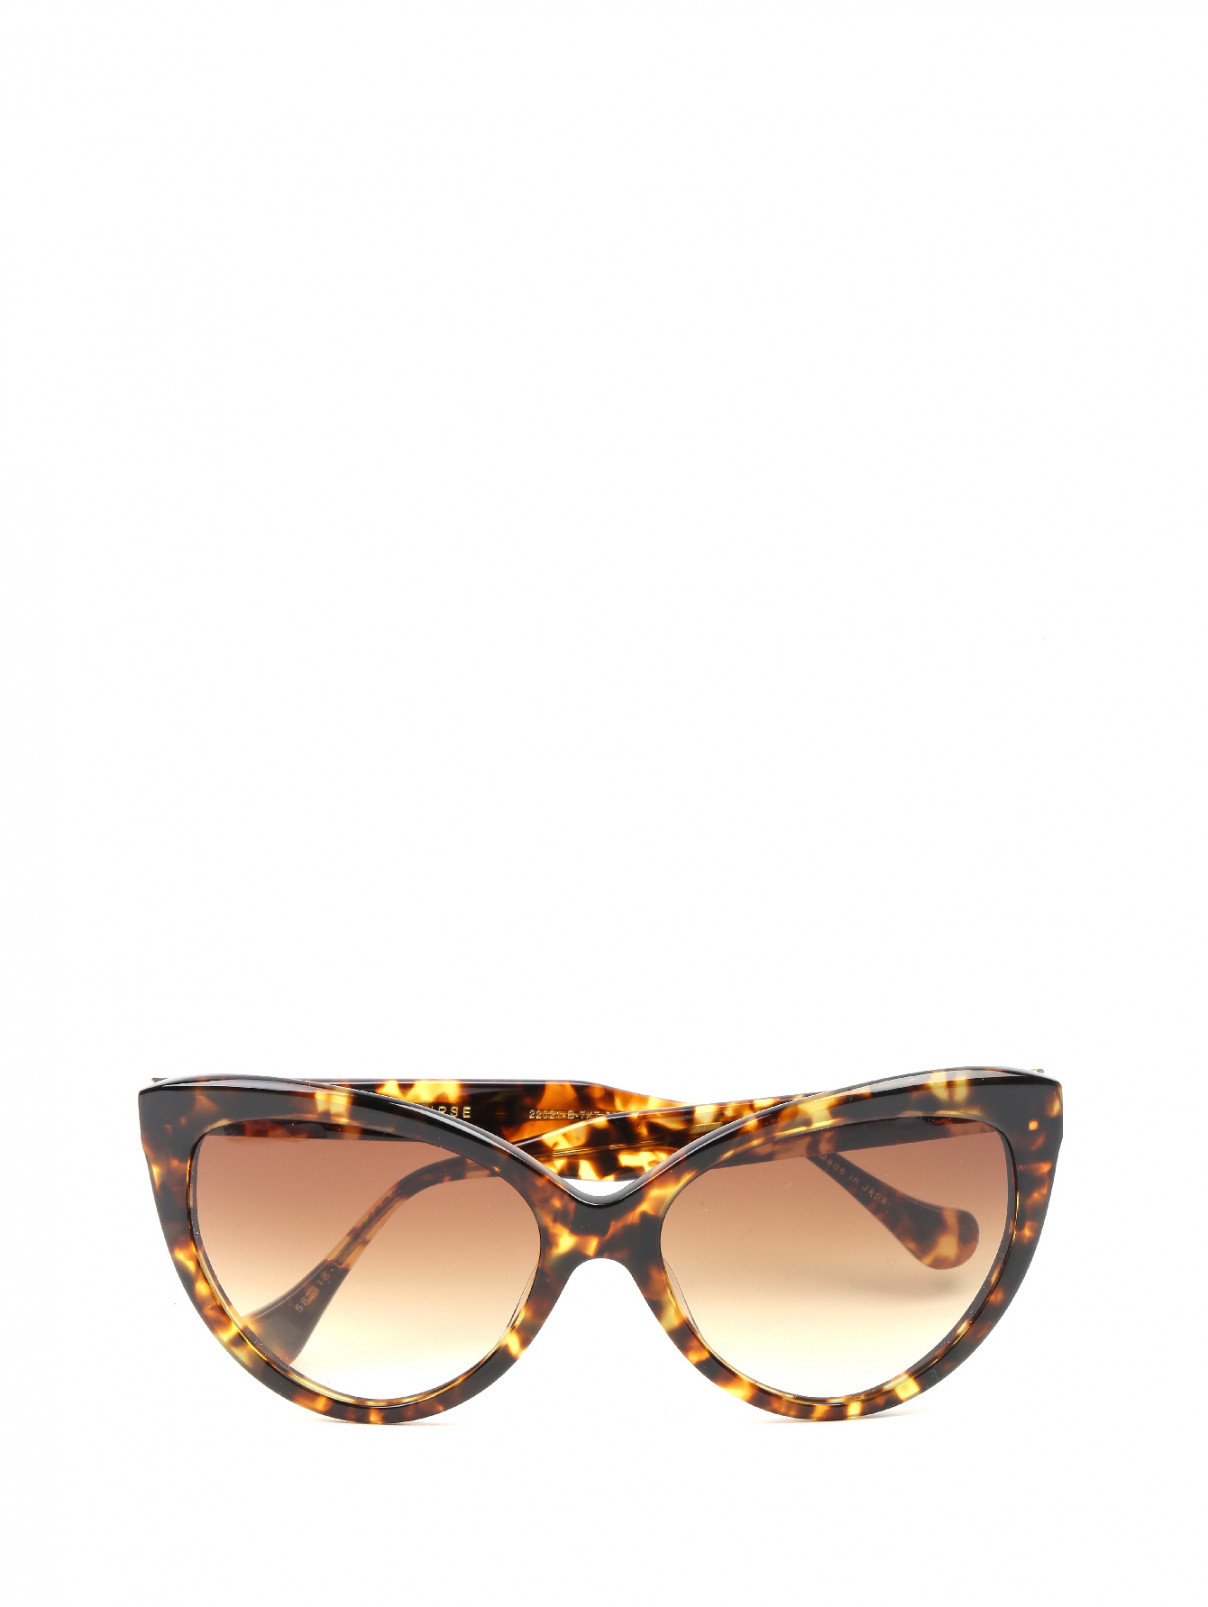 Солнцезащитные очки в пластиковой оправе с узором Dita  –  Общий вид  – Цвет:  Коричневый